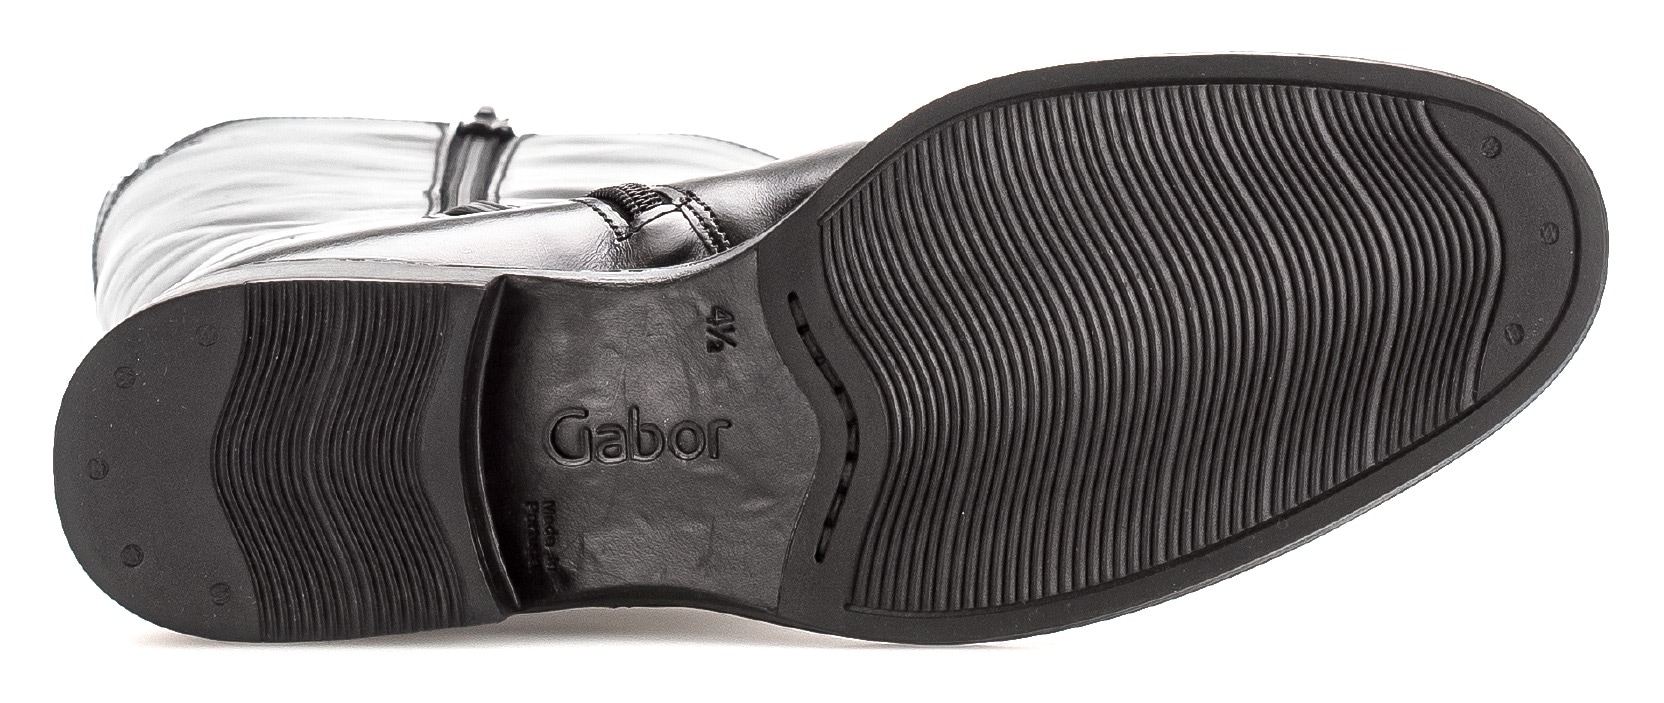 Gabor Stiefel, Reißverschlussstiefel, Blockabsatz, mit regulierbarem Varioschaft